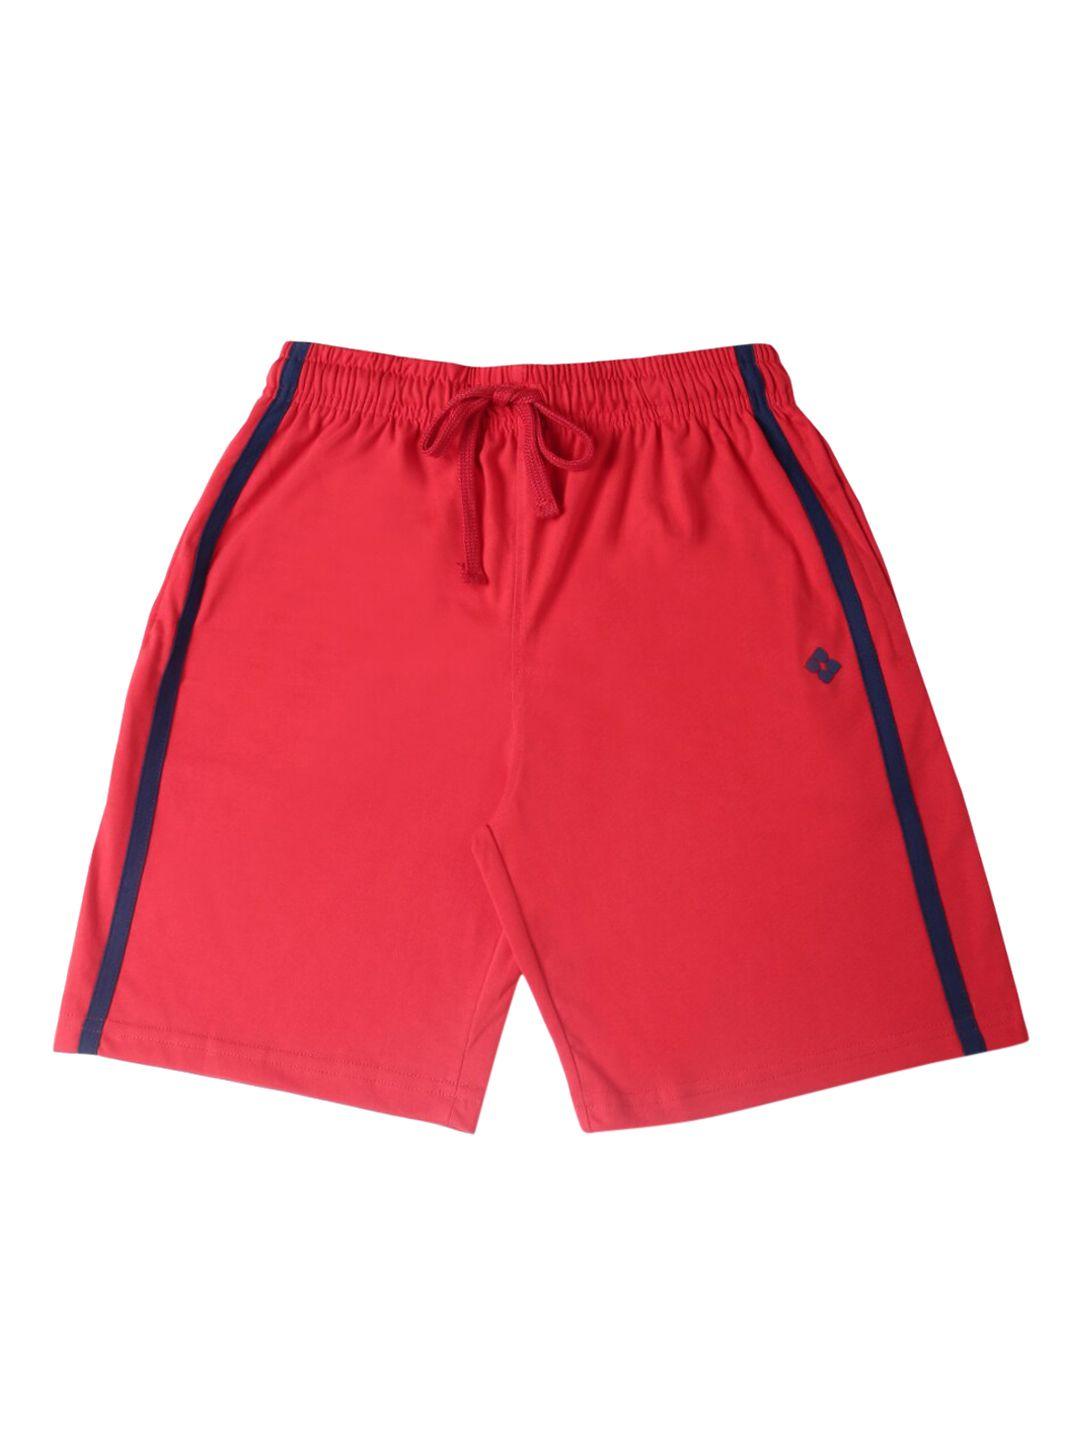 dollar boys red solid regular fit regular shorts